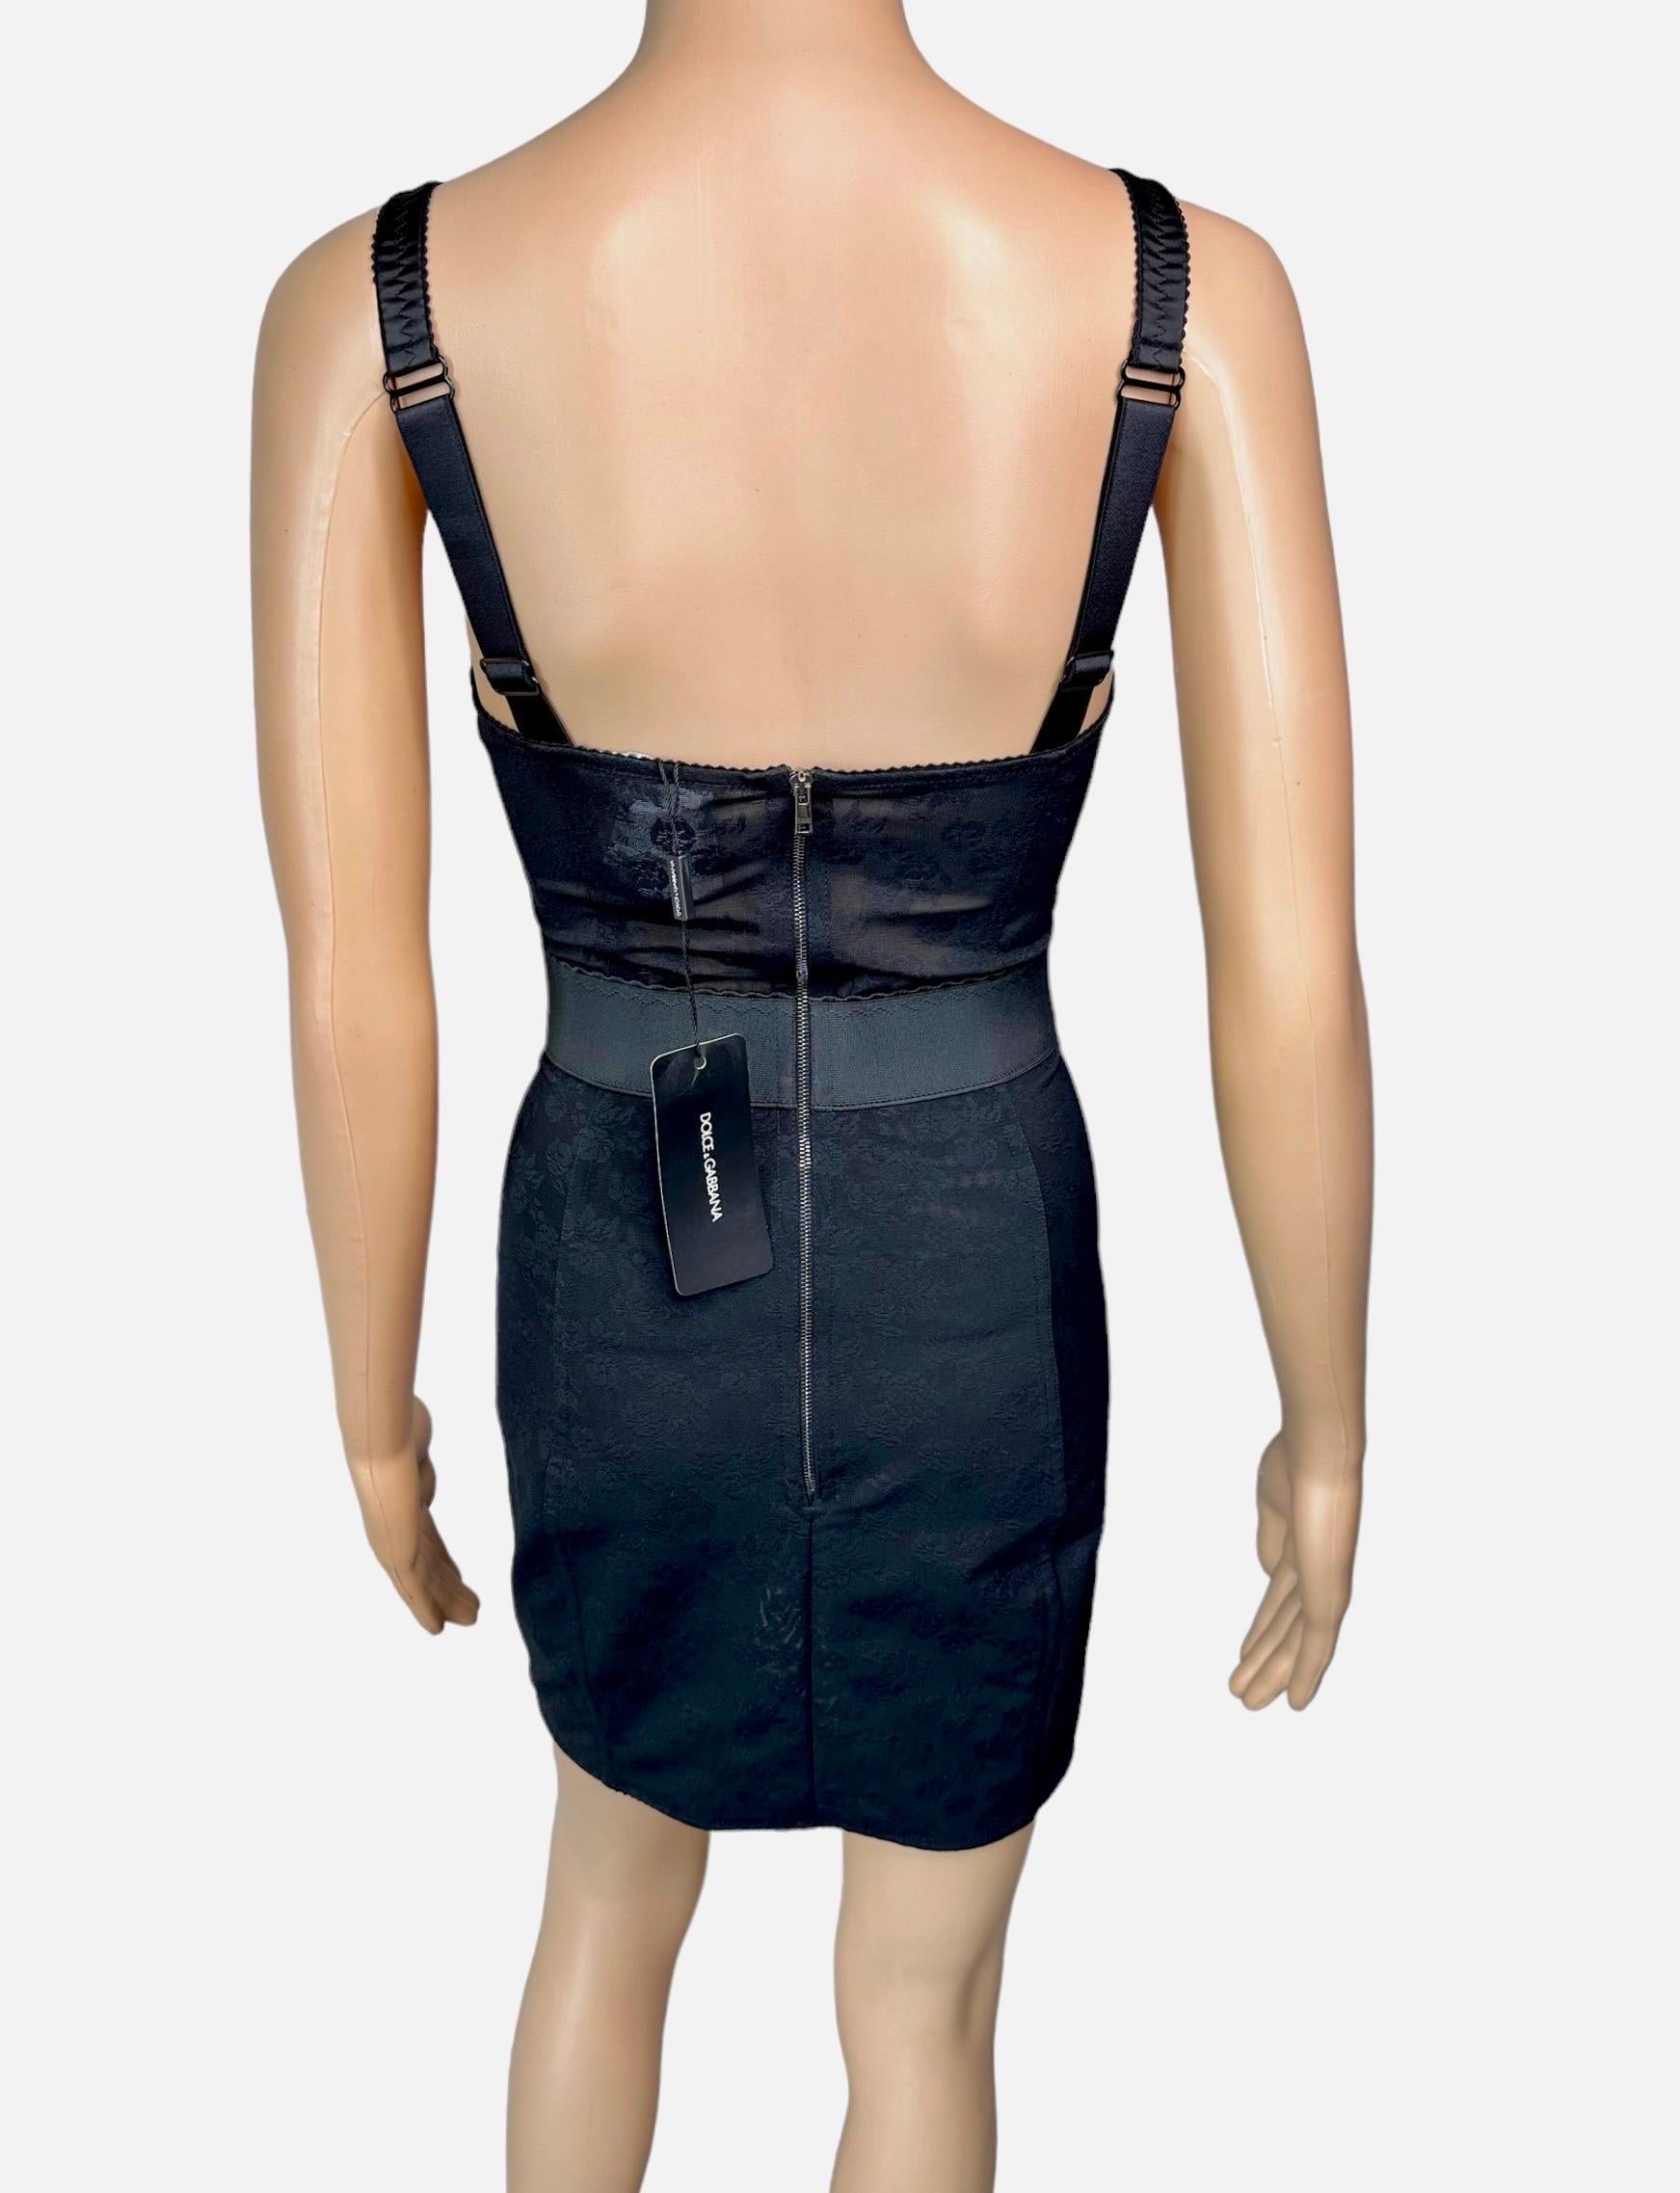 Women's or Men's Dolce & Gabbana Unworn Bustier Bra Sheer Lace Panels Bodycon Black Mini Dress For Sale